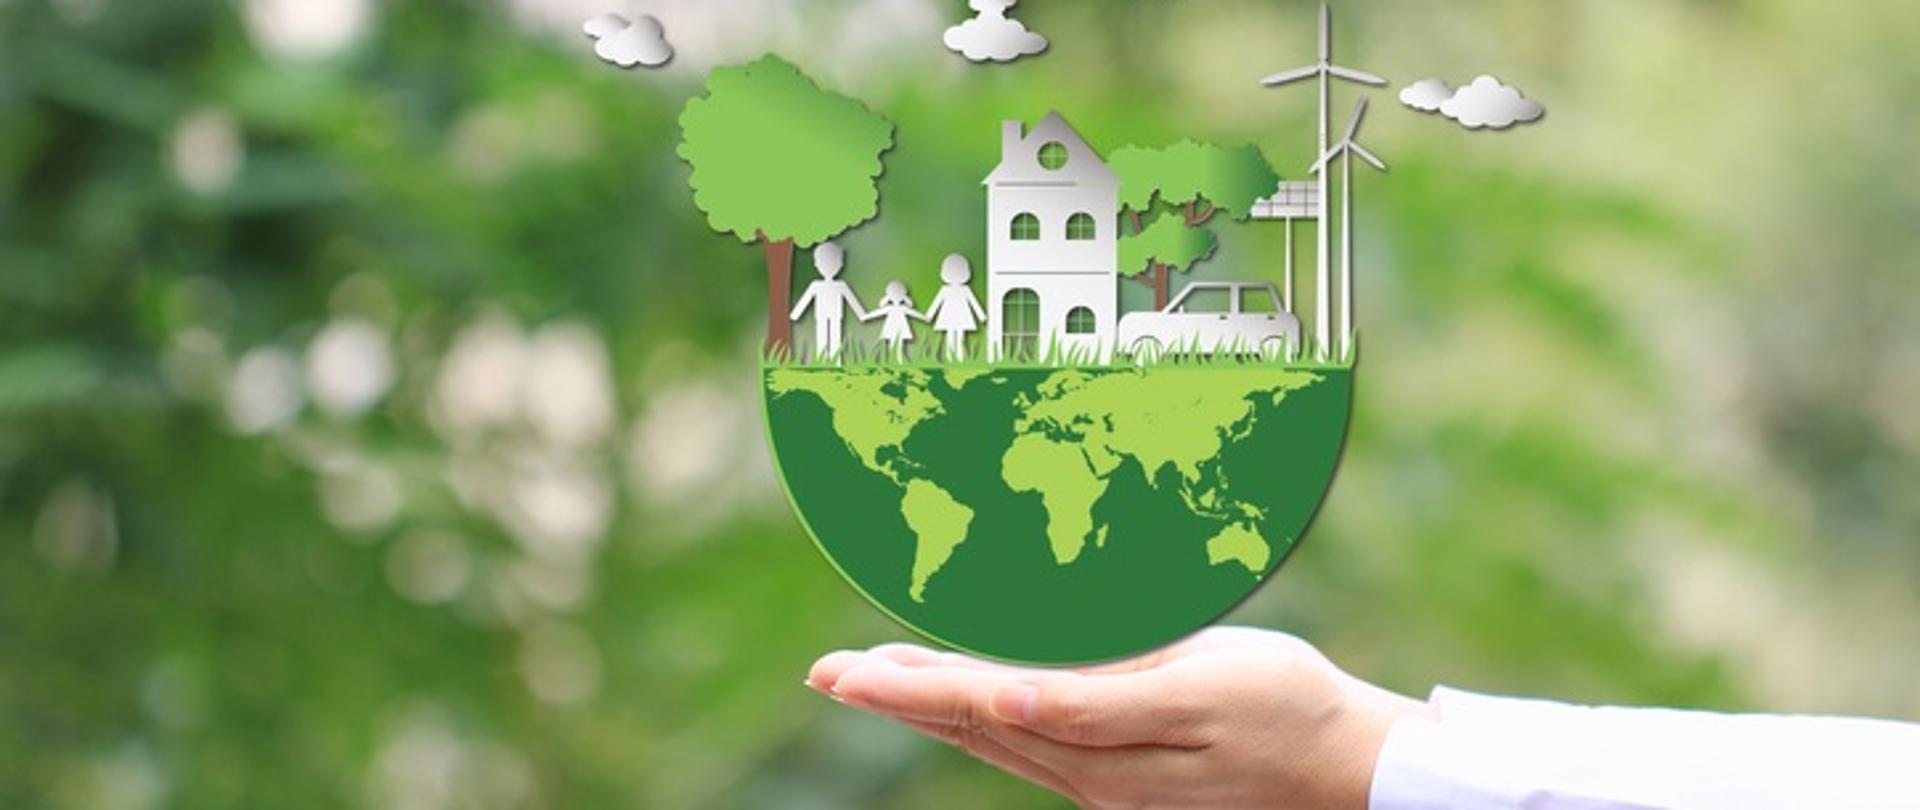 Ręka trzyma połówkę zielonego globu ziemskiego. Druga połowa globusa to białe postacie rodziny, domu na naturalnym zielonym tle. 